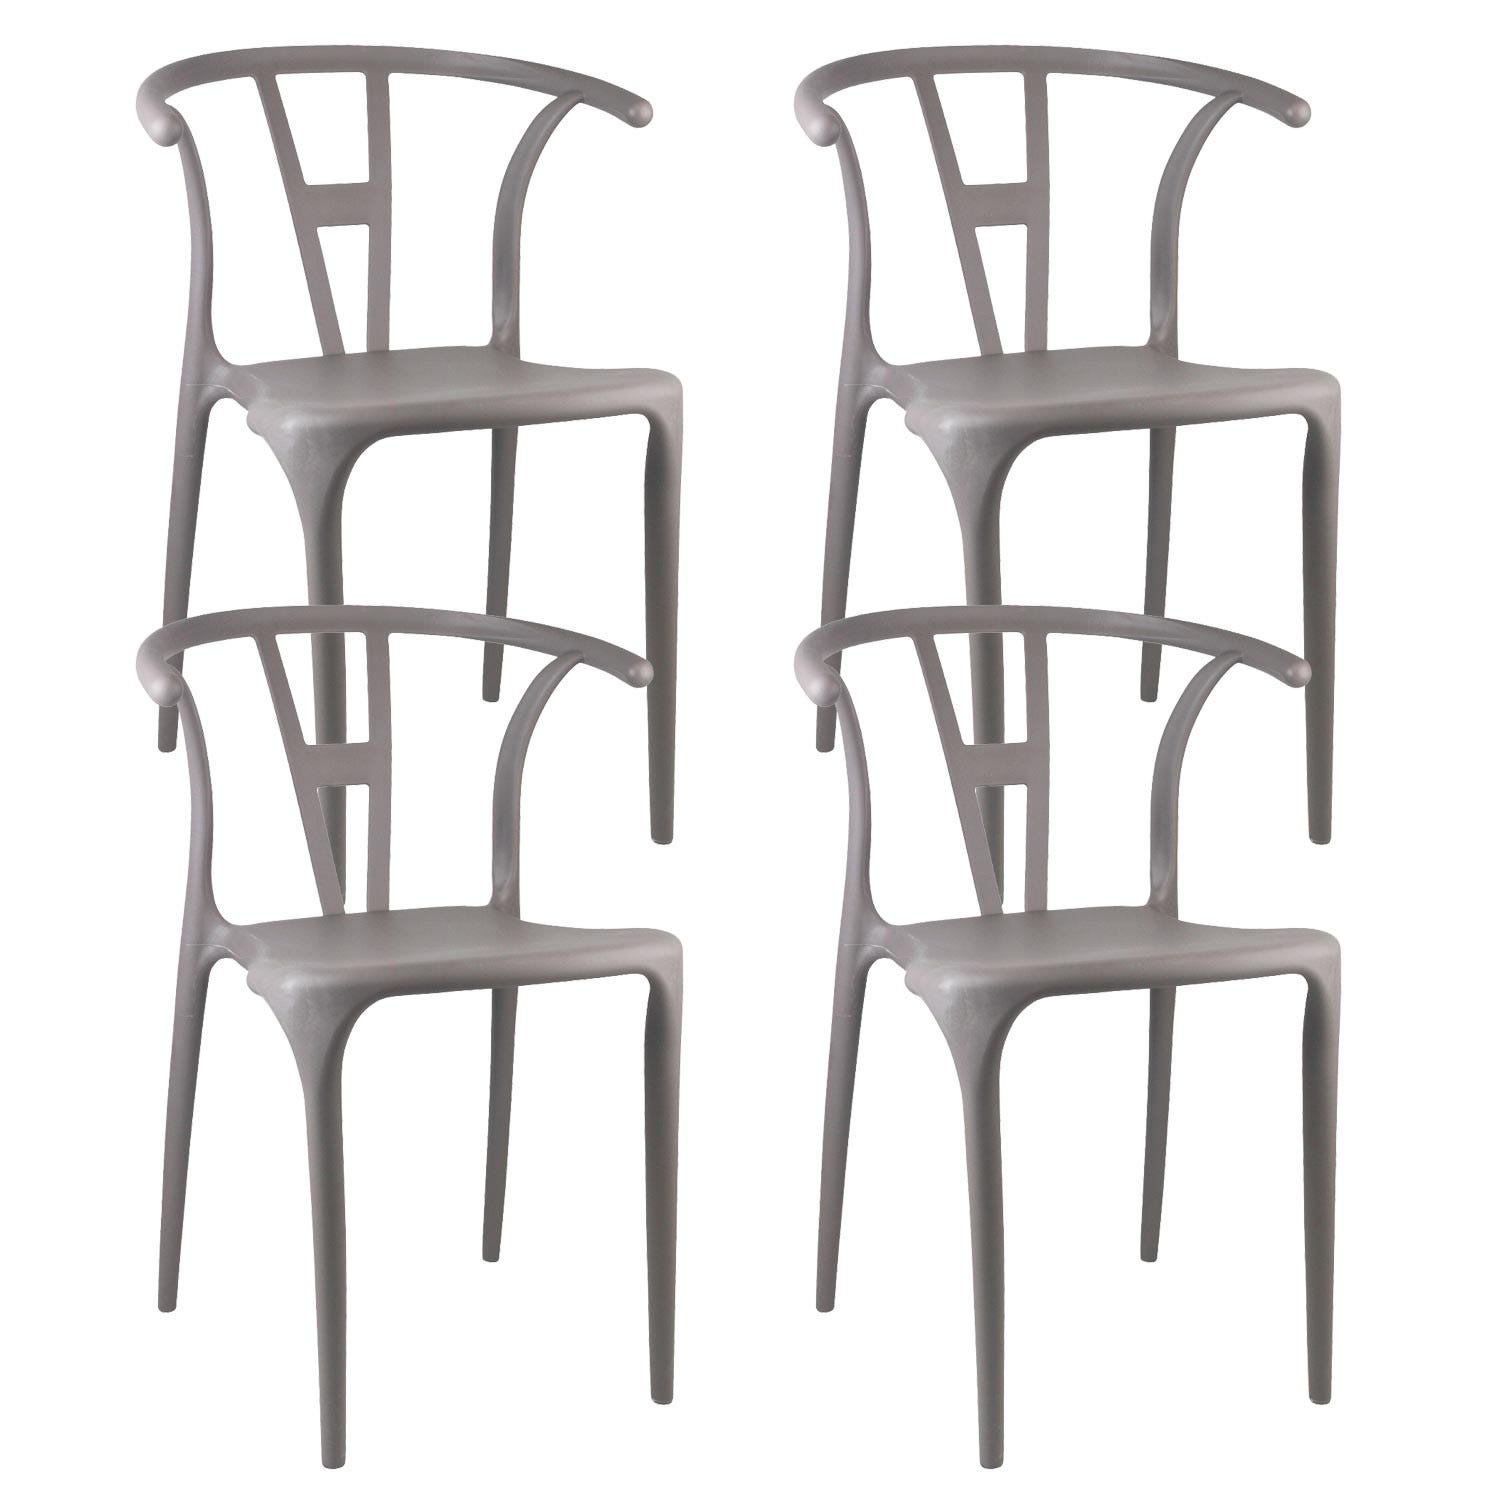 Chaise empilable d'extérieur en polypropylène Air coloris gris